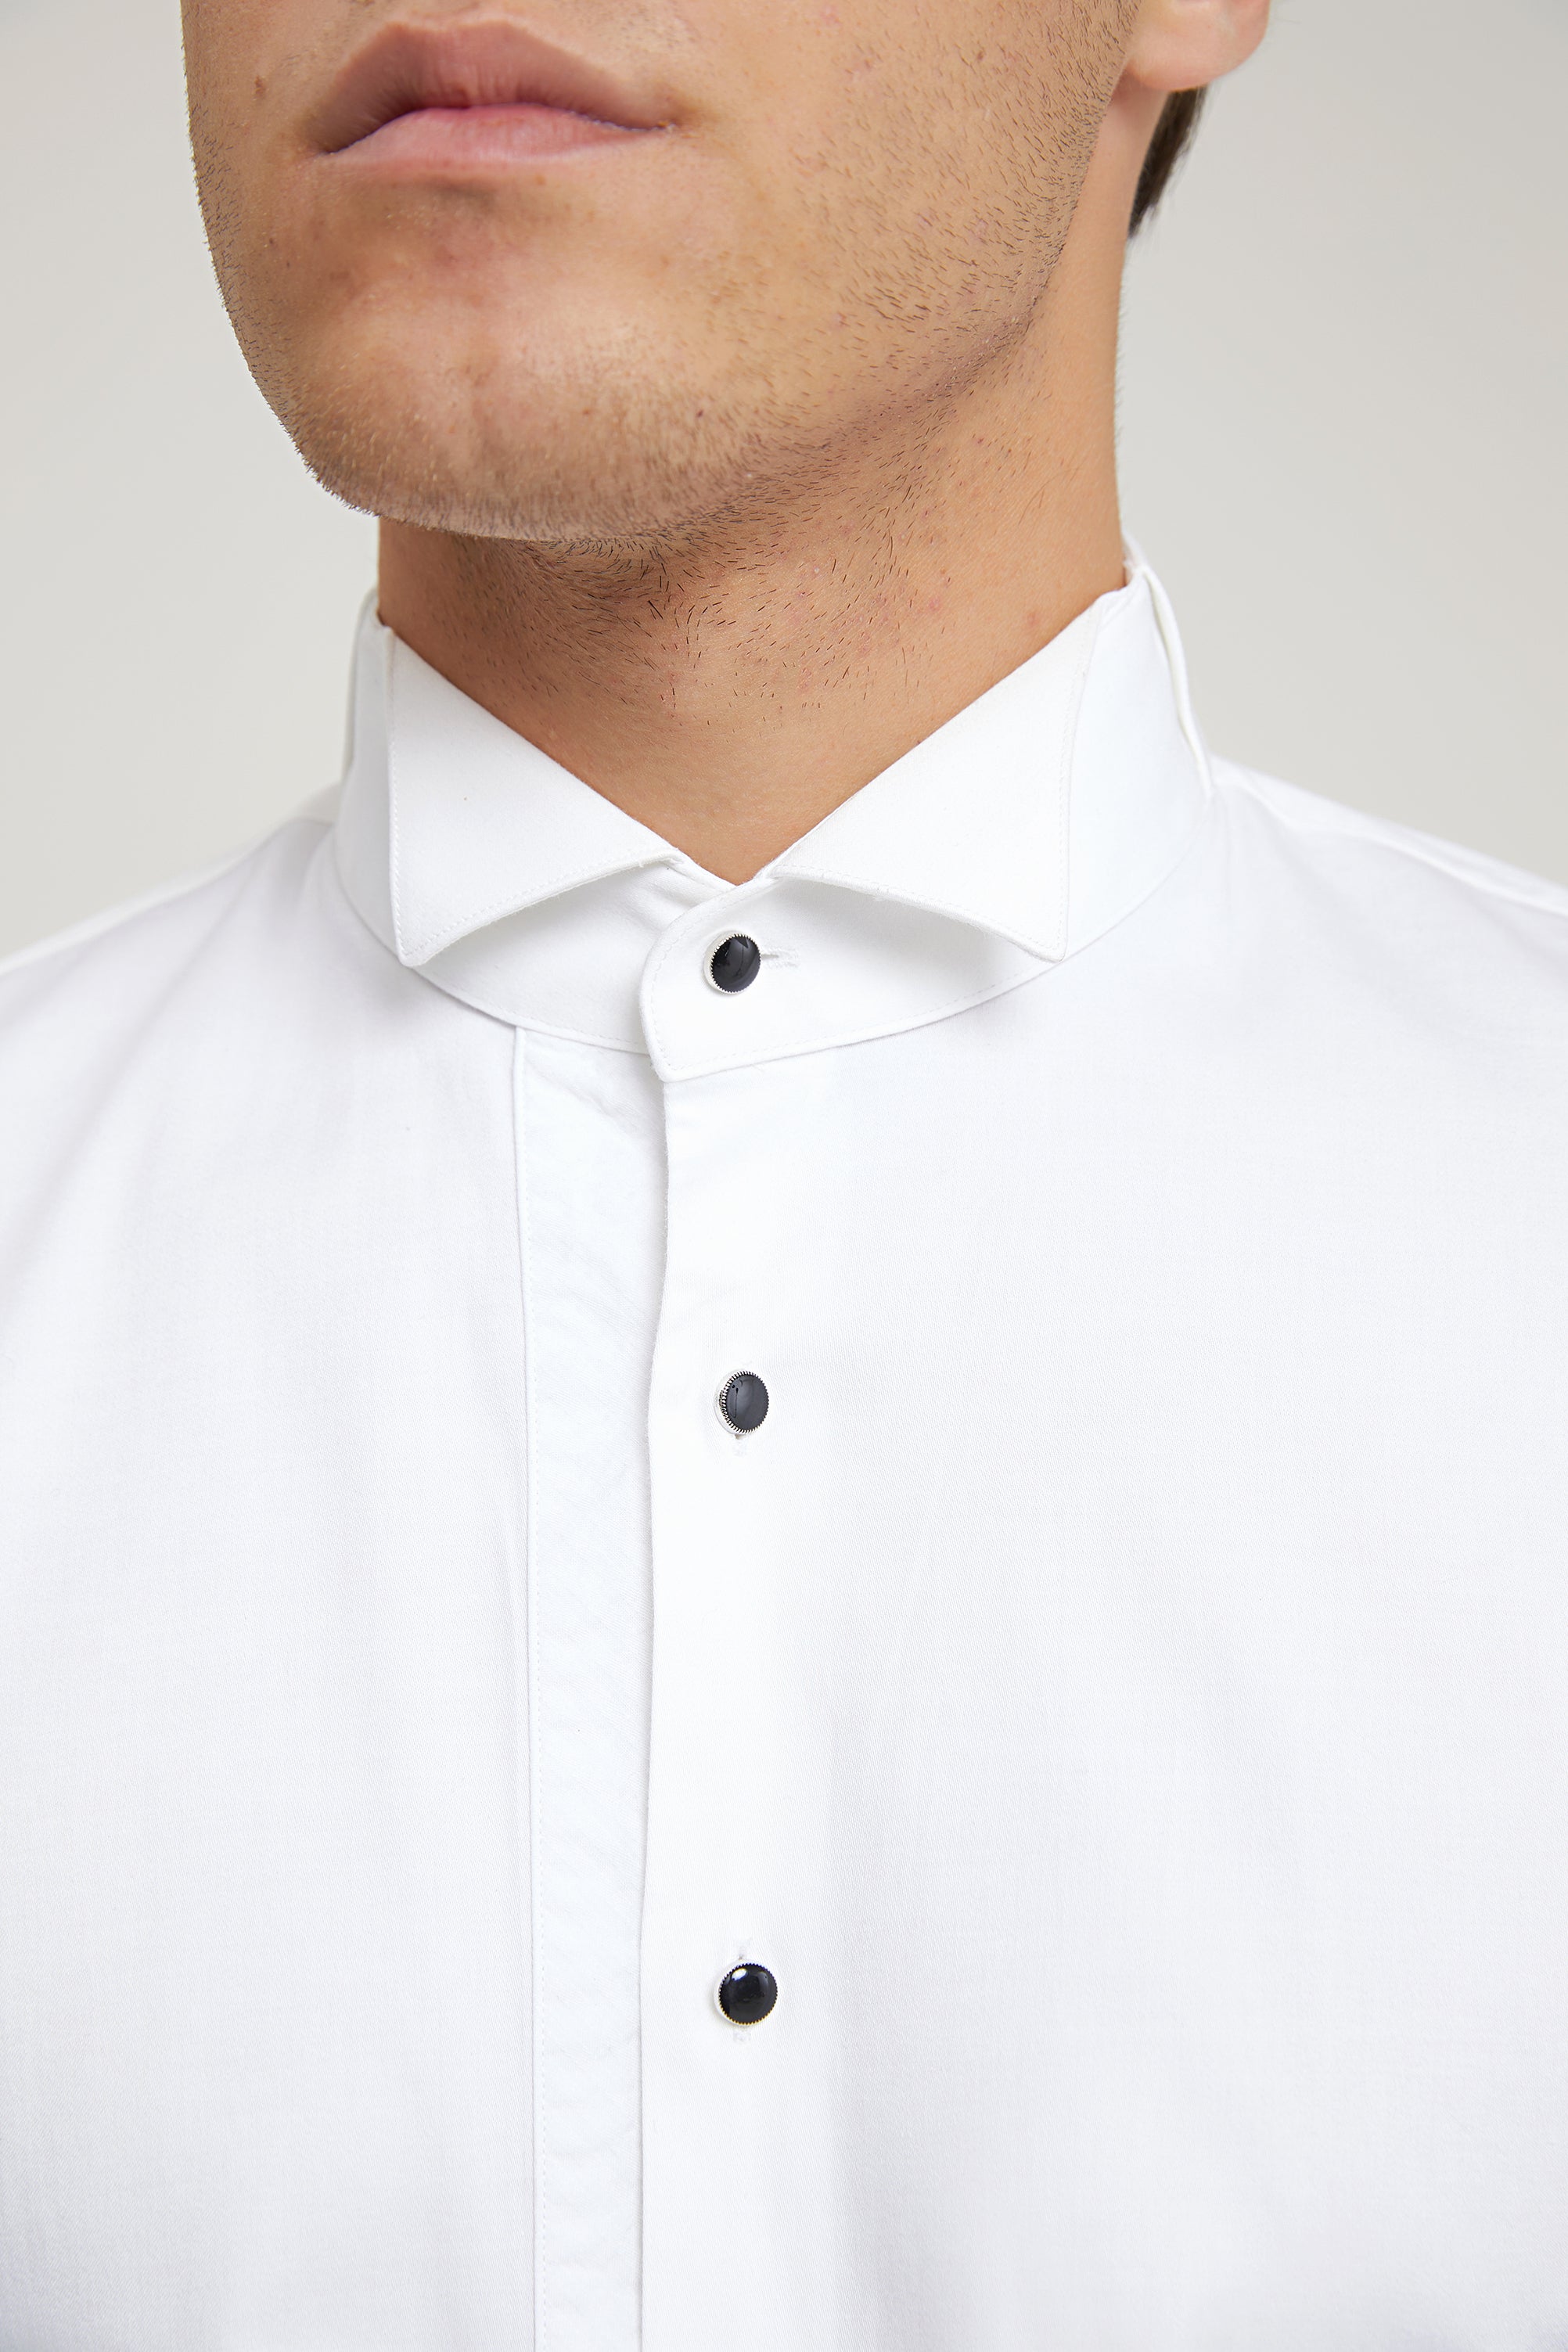 D's Damat White Stylish Classic Shirt